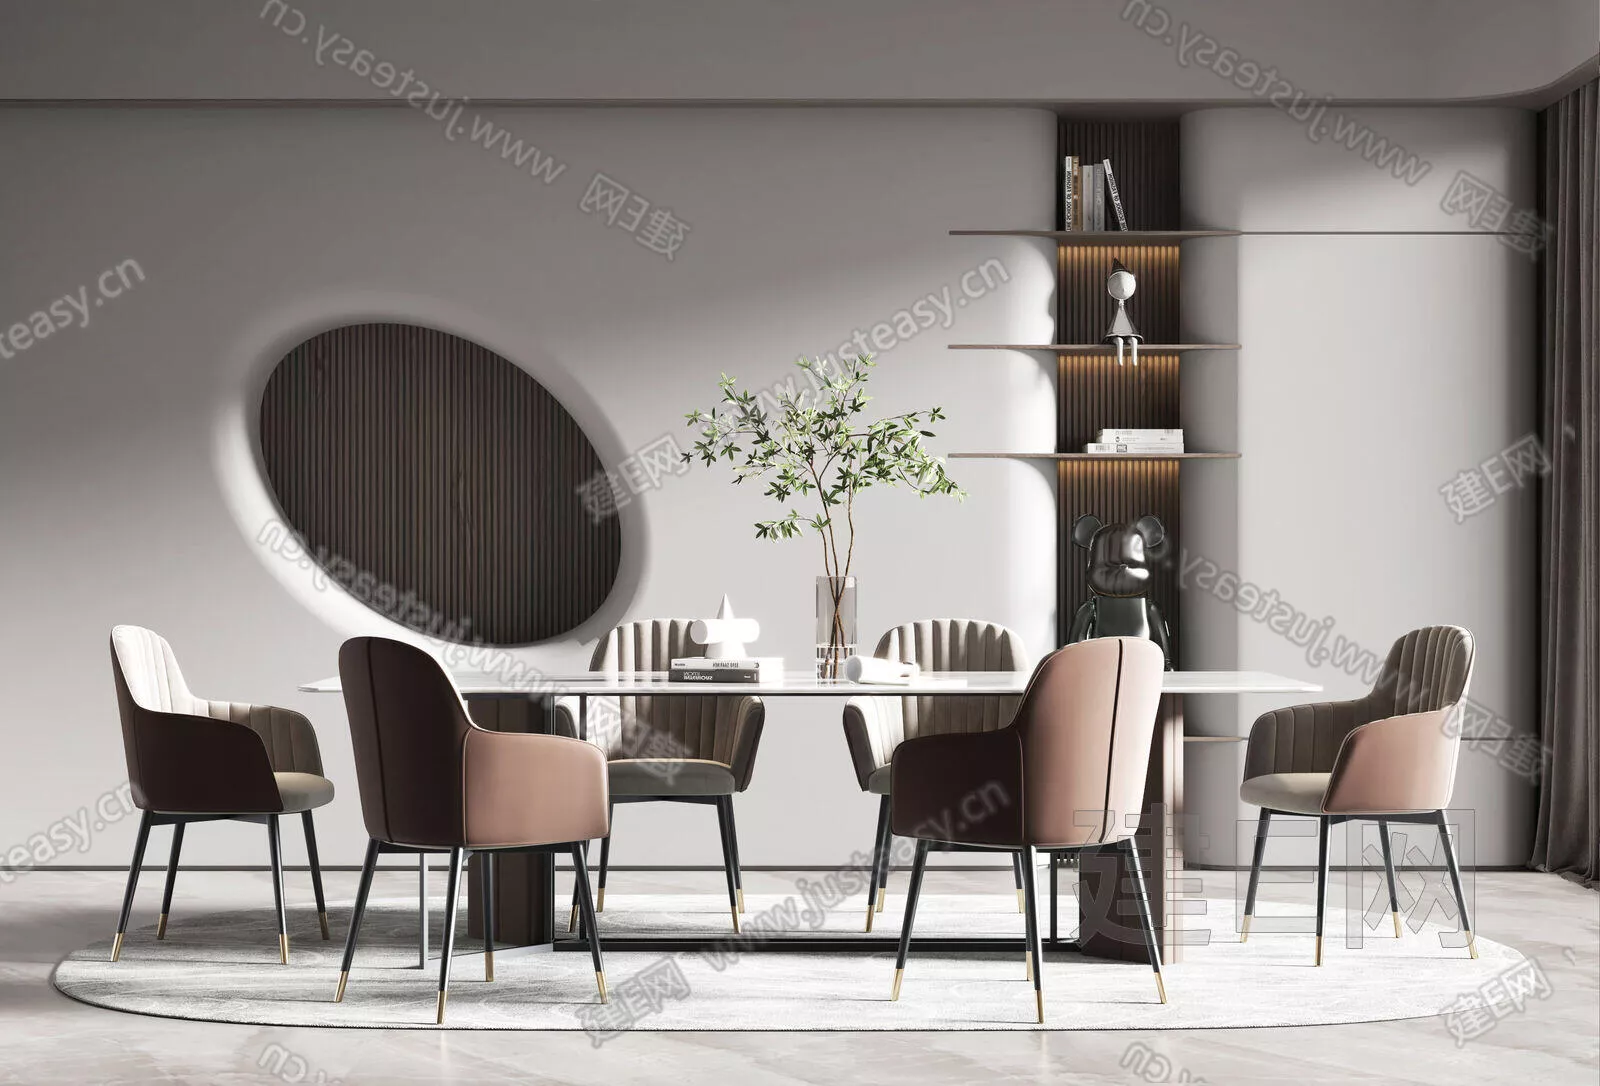 MODERN DINING ROOM - SKETCHUP 3D SCENE - ENSCAPE - 114115665